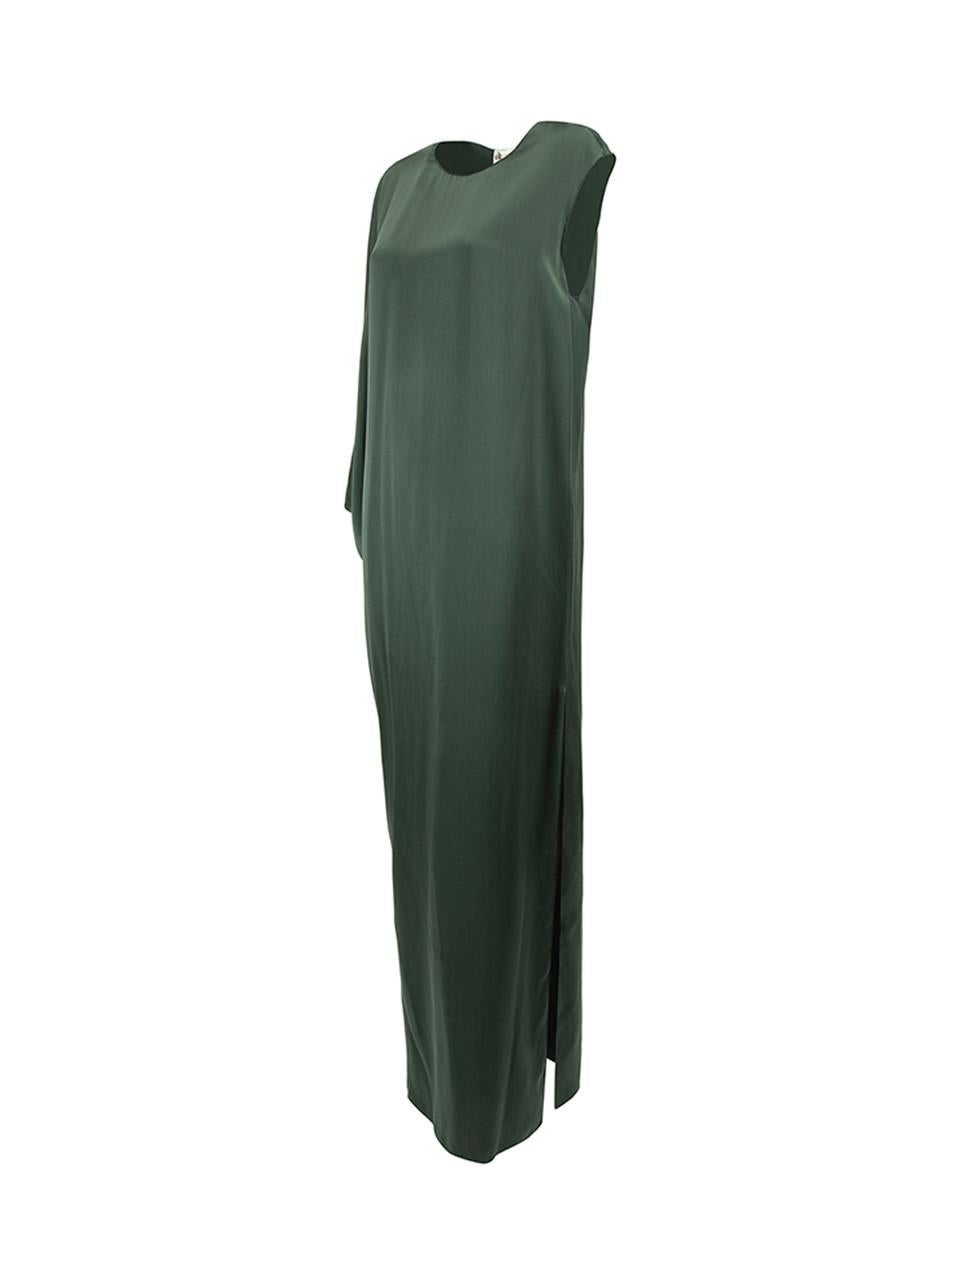 Pre-Loved Lanvin Women's Green Silk Asymmetric One Sleeve Dress 1